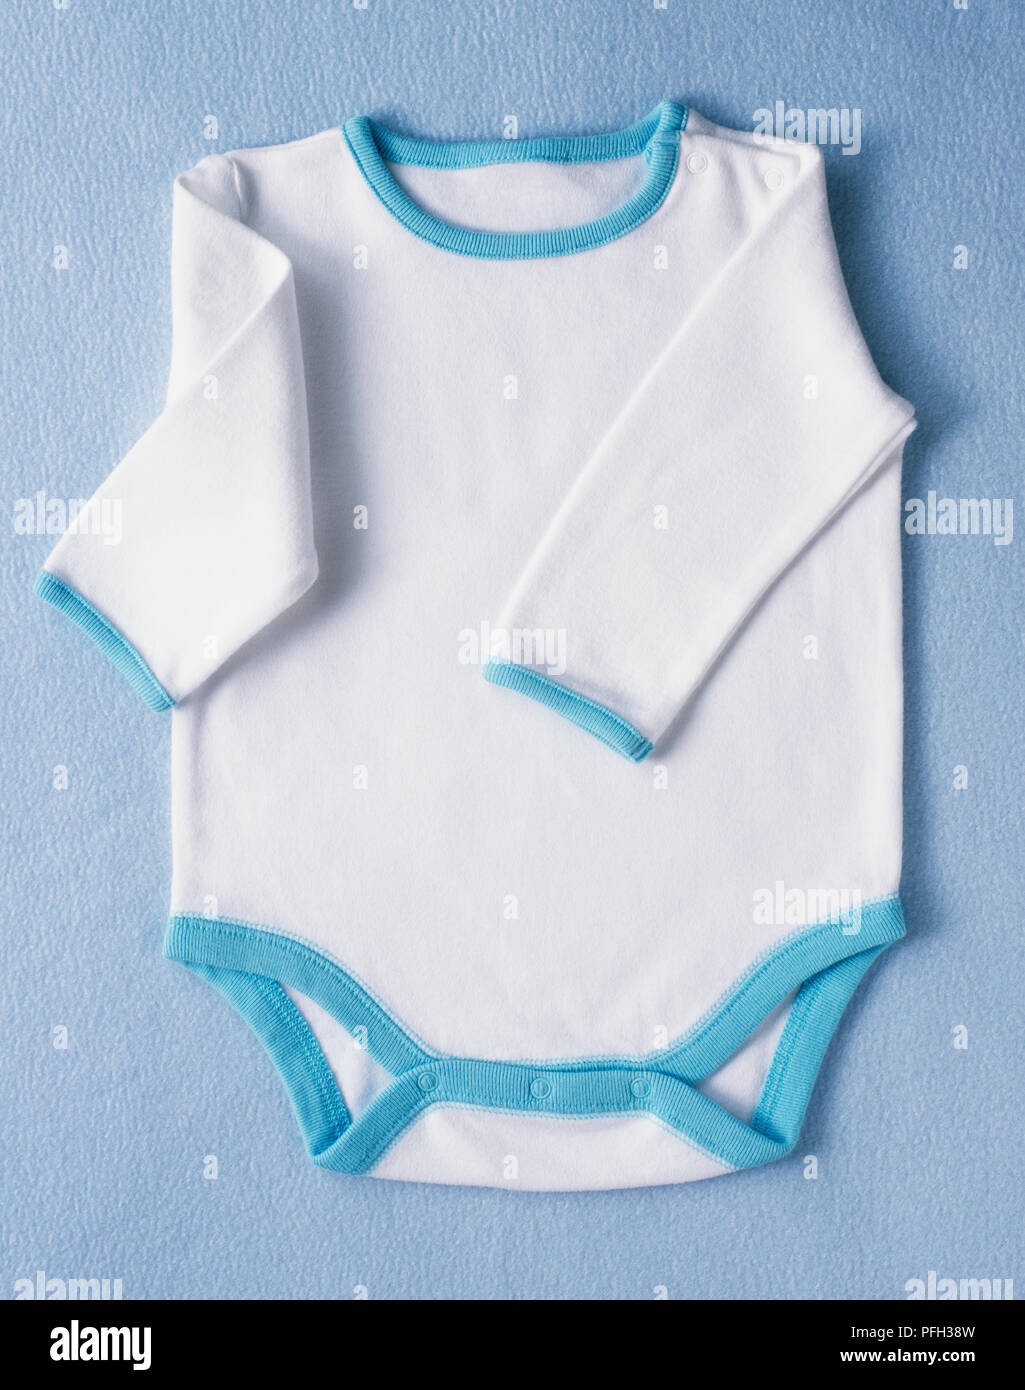 Le livre blanc de bébé l'un complet-veston à manches longues et garniture bleu Banque D'Images